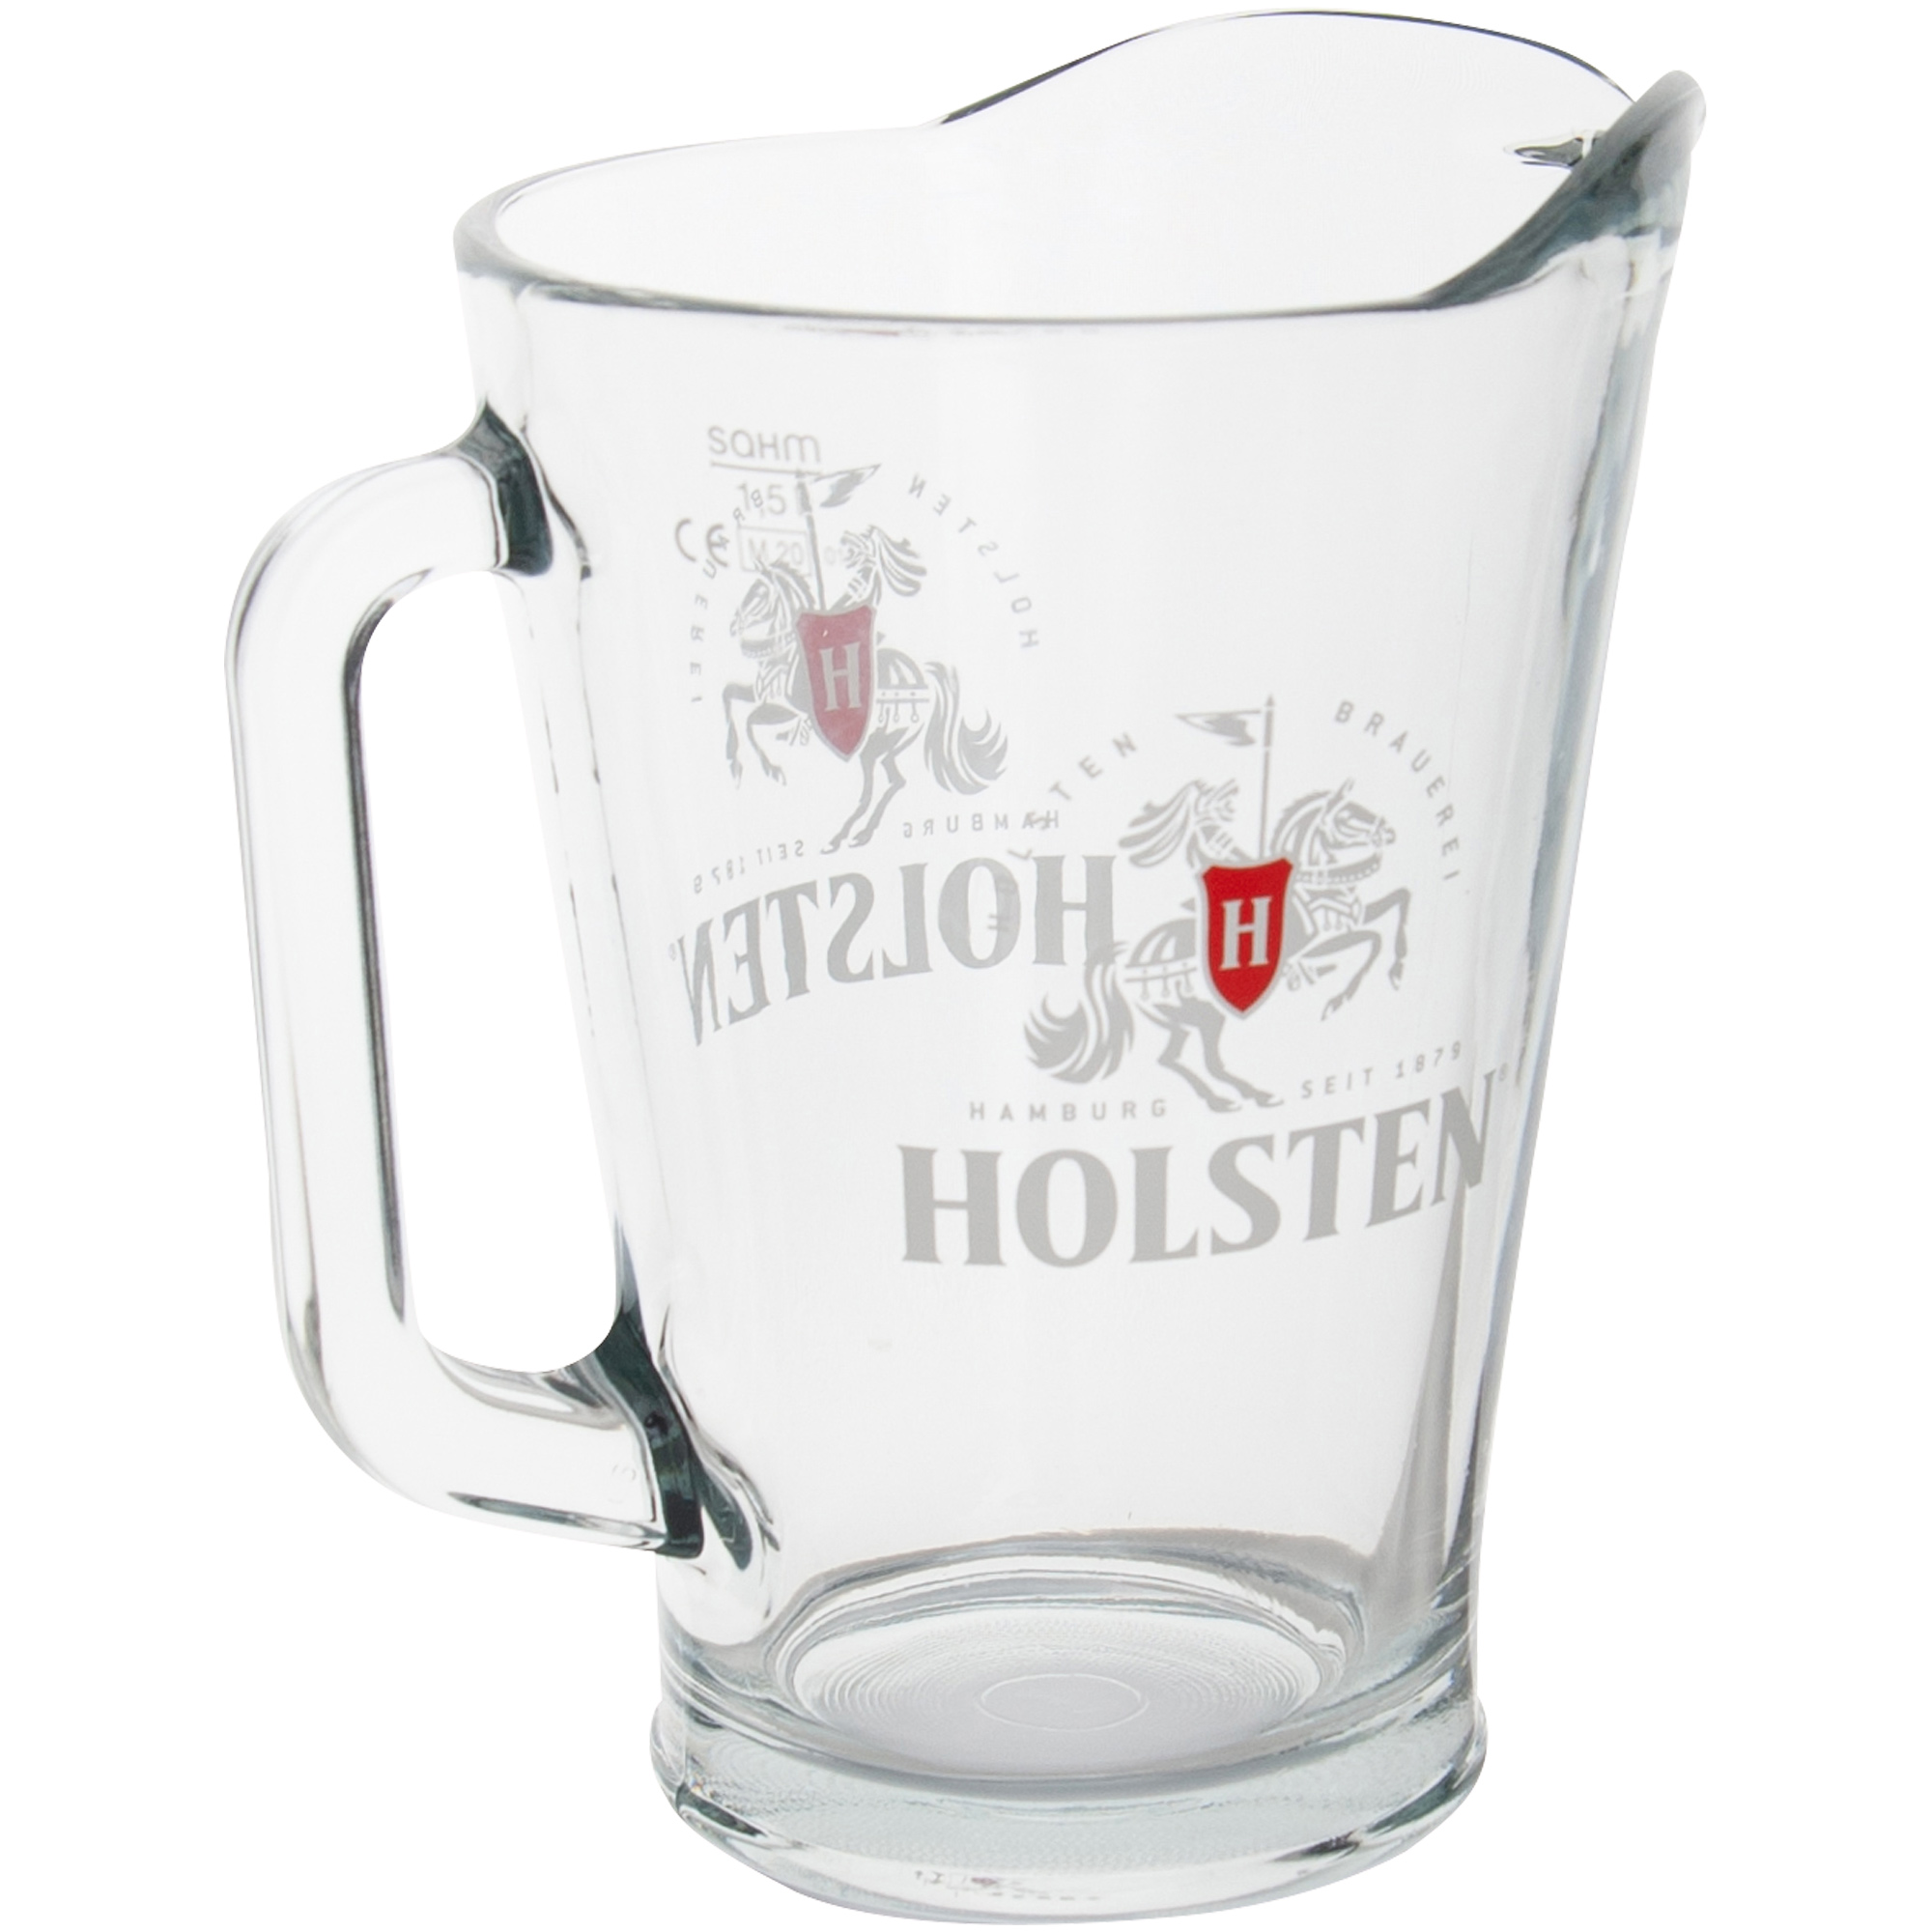 Holsten - Pitcher - 1,5 Liter